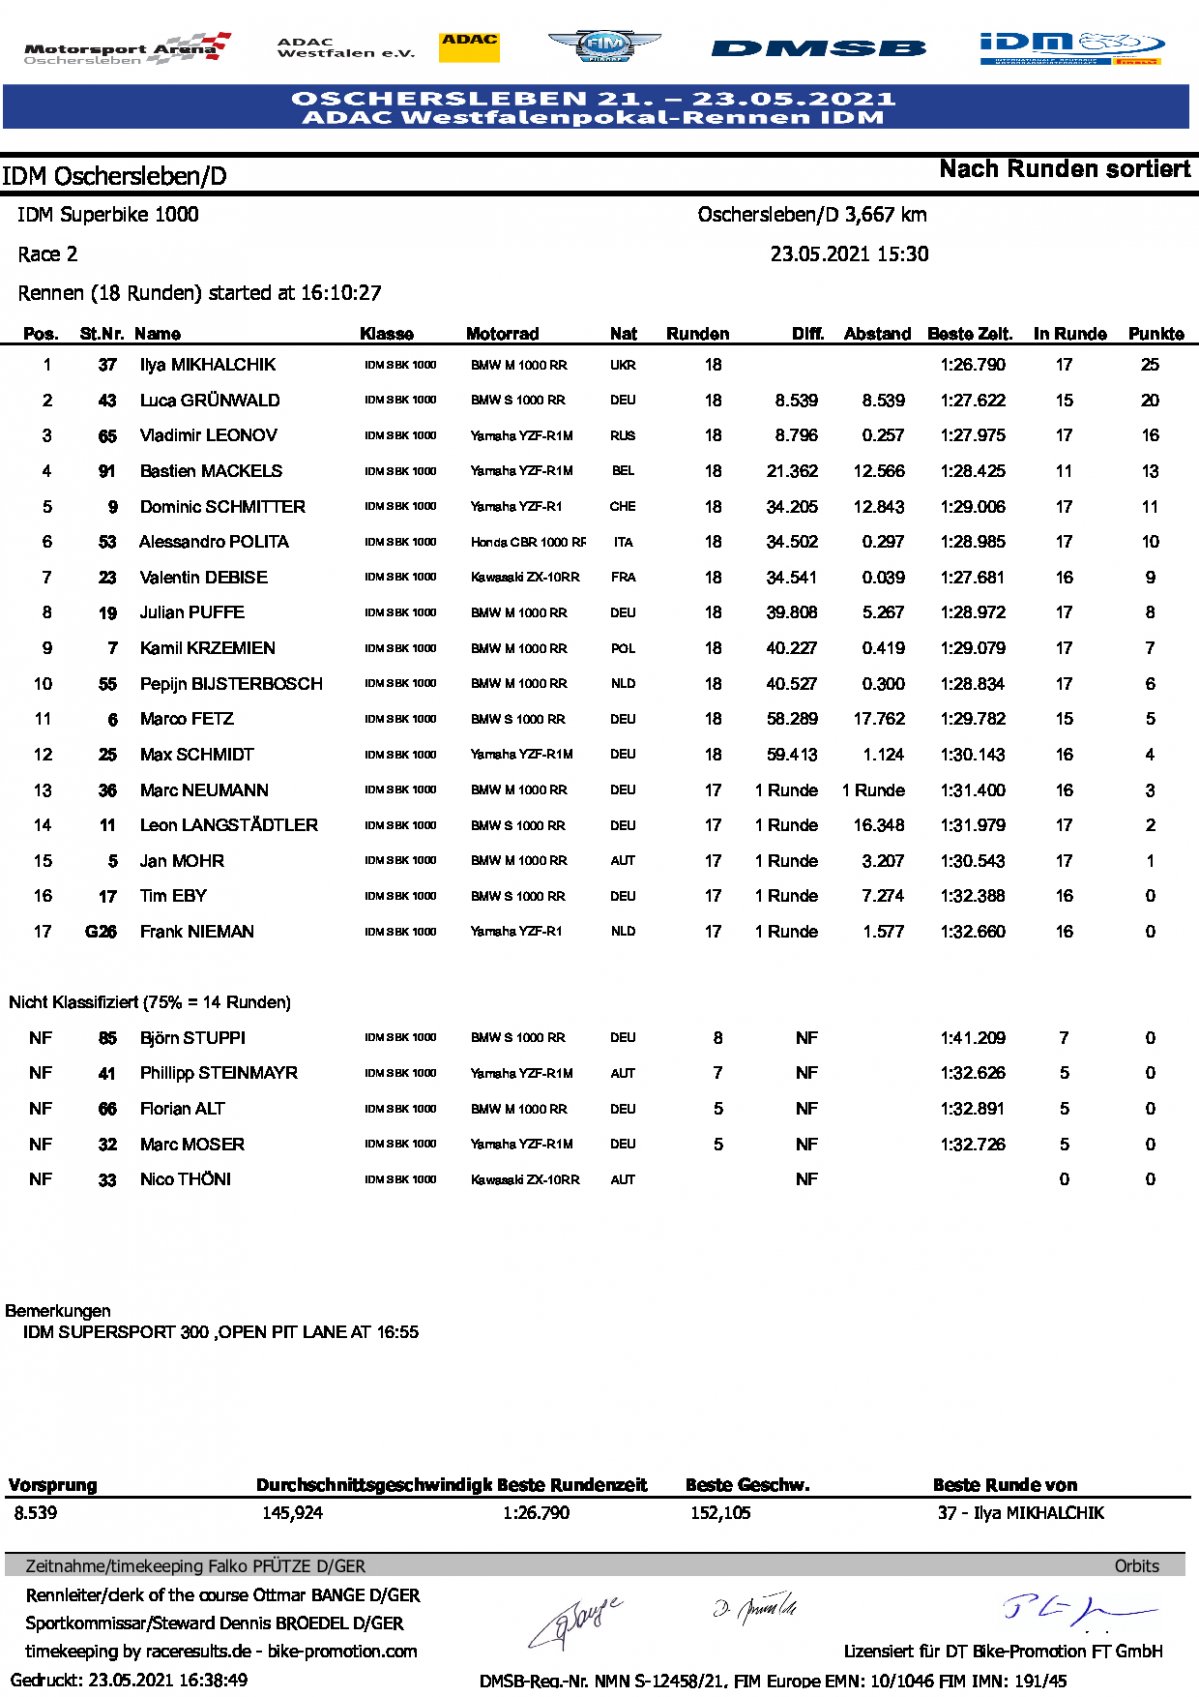 Результаты 2 гонки IDM Superbike, Motorsport Arena Oschersleben (23/05/2021)